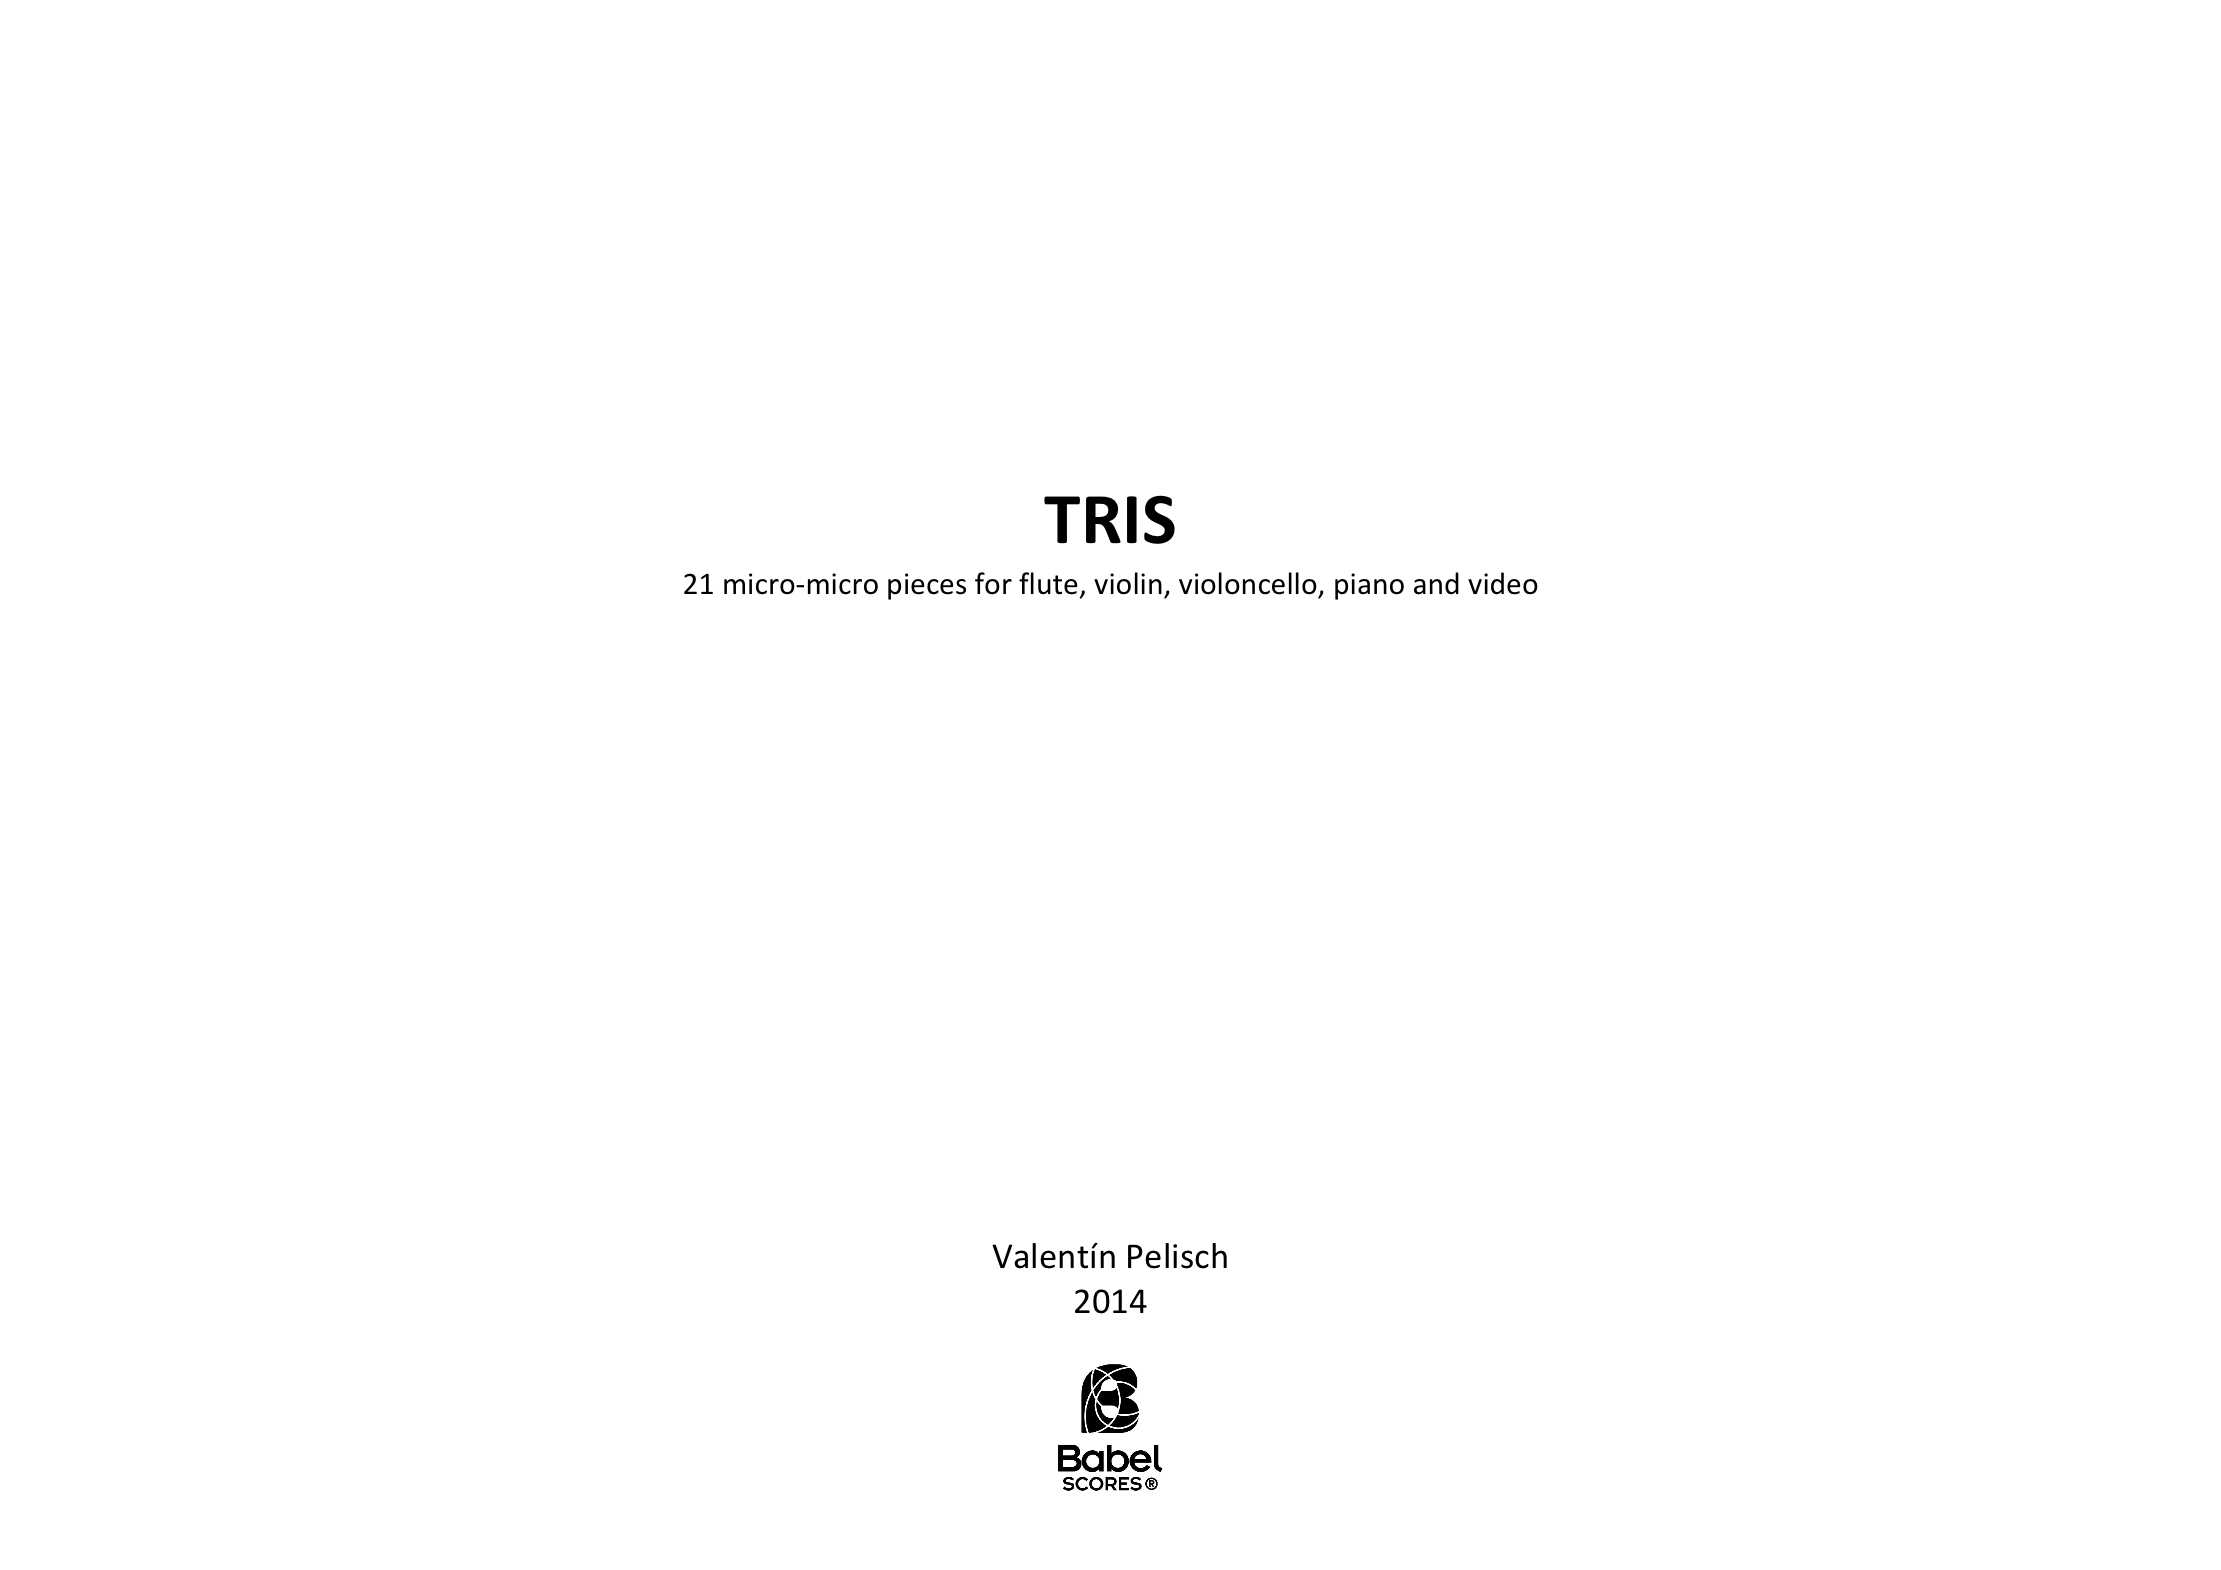 TRIS A4 z 3 216 1 317